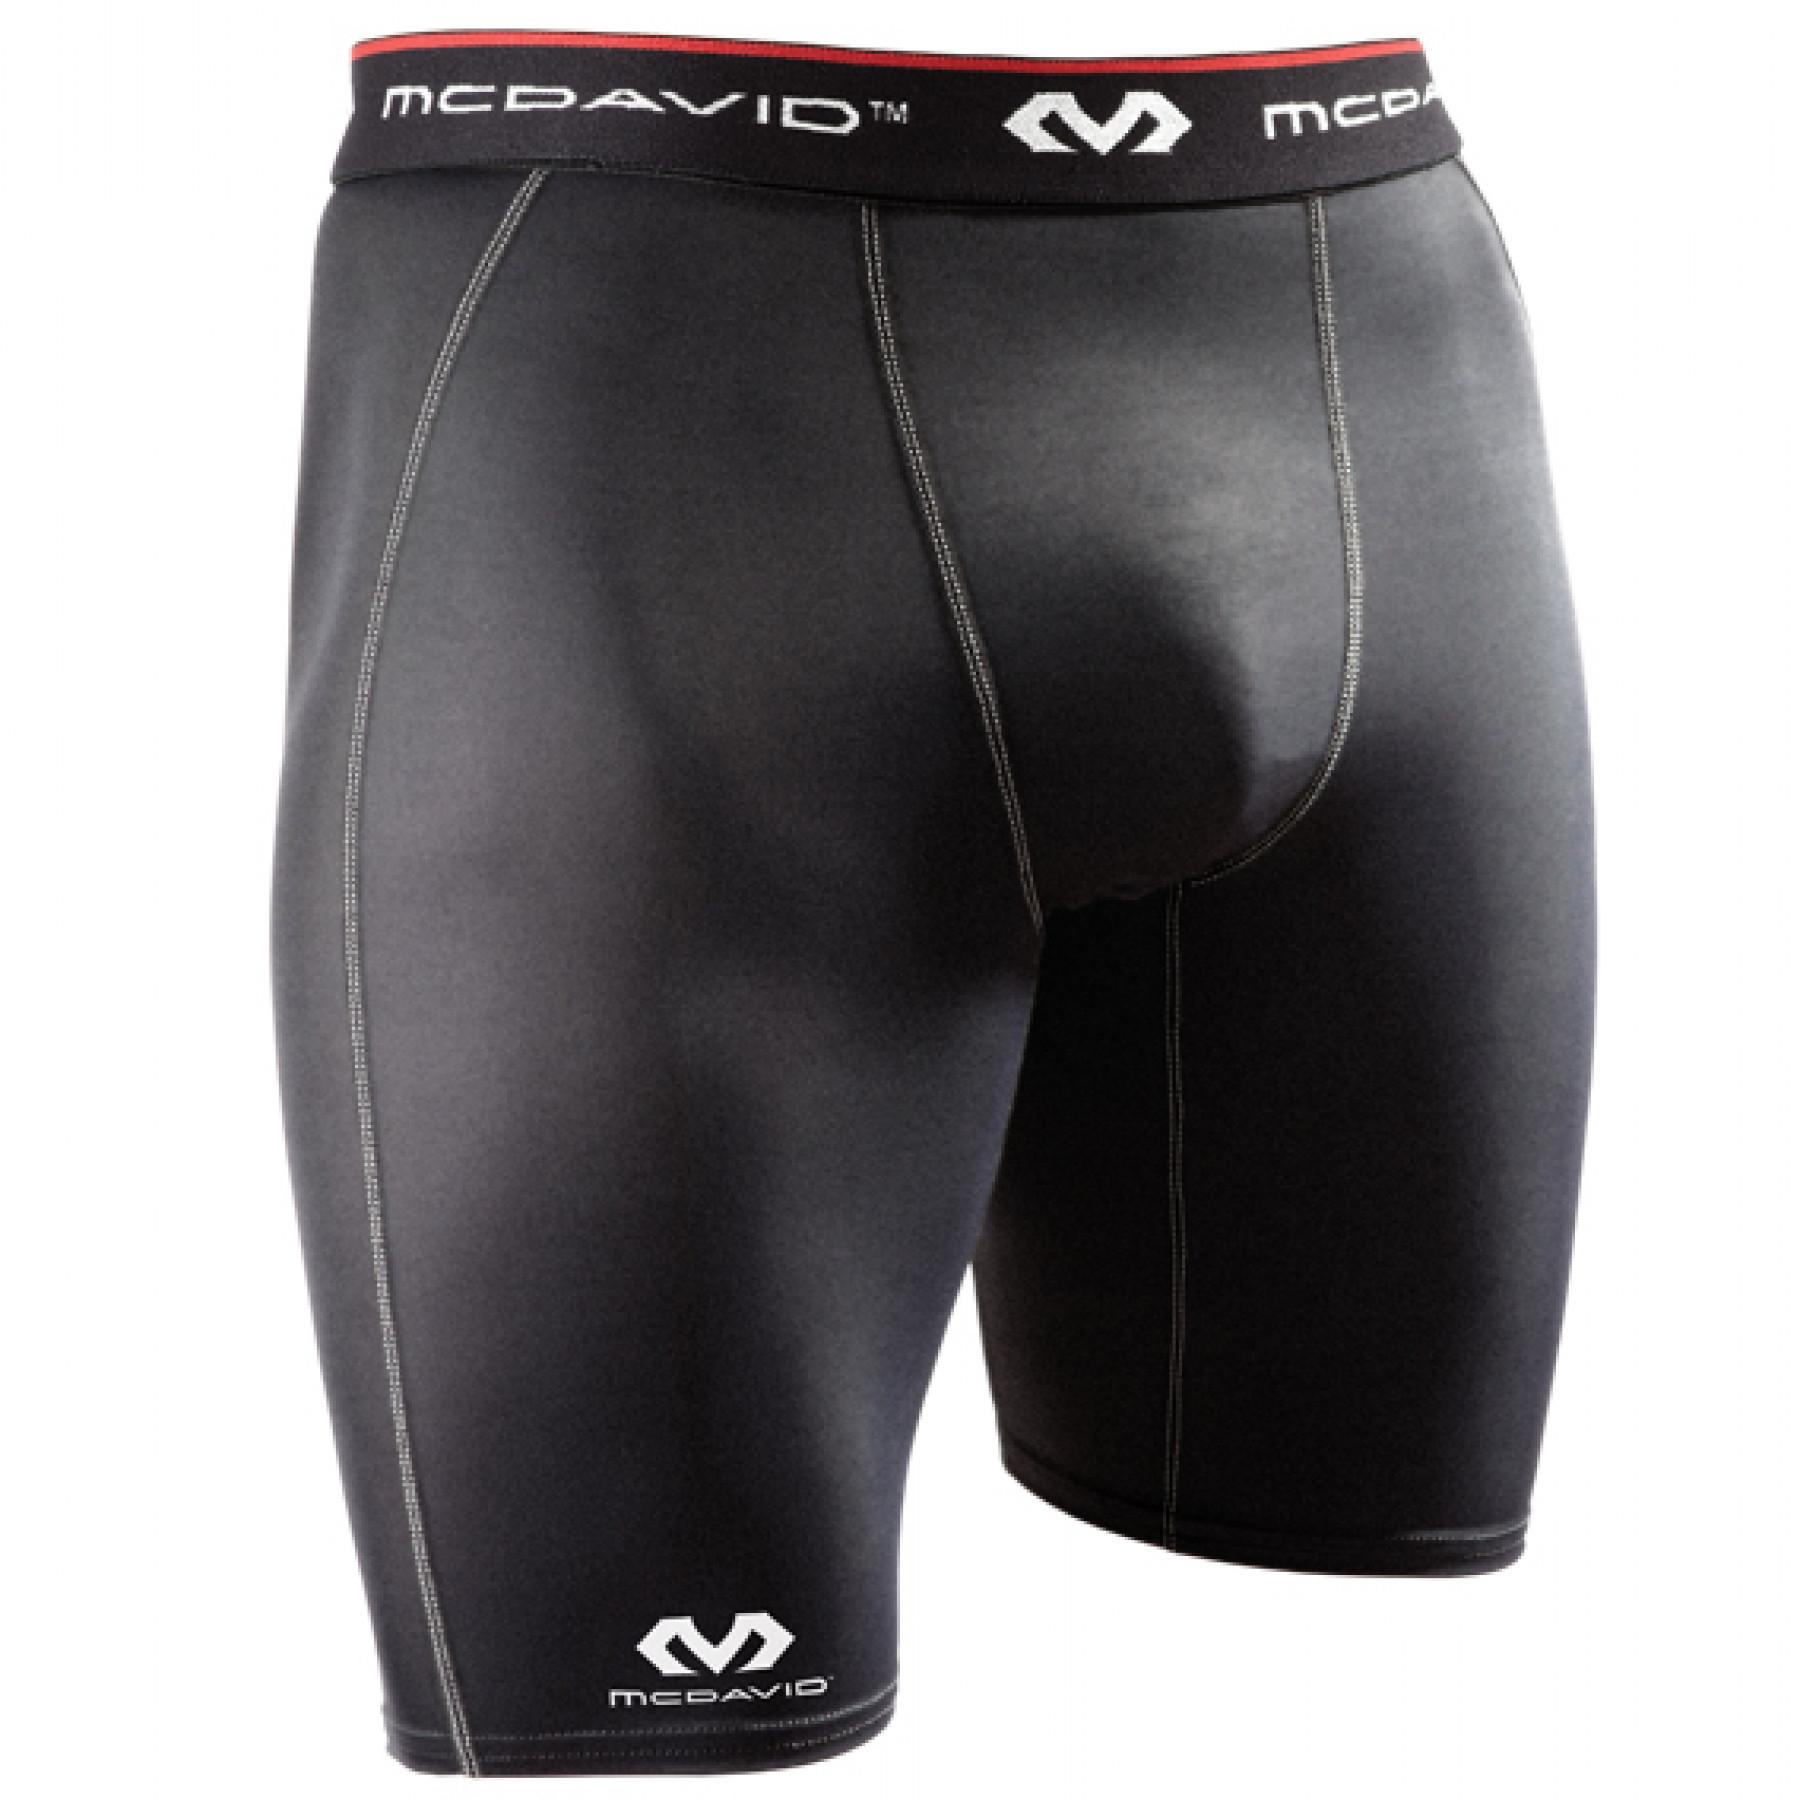 Pantalón corto compresión McDavid HDC